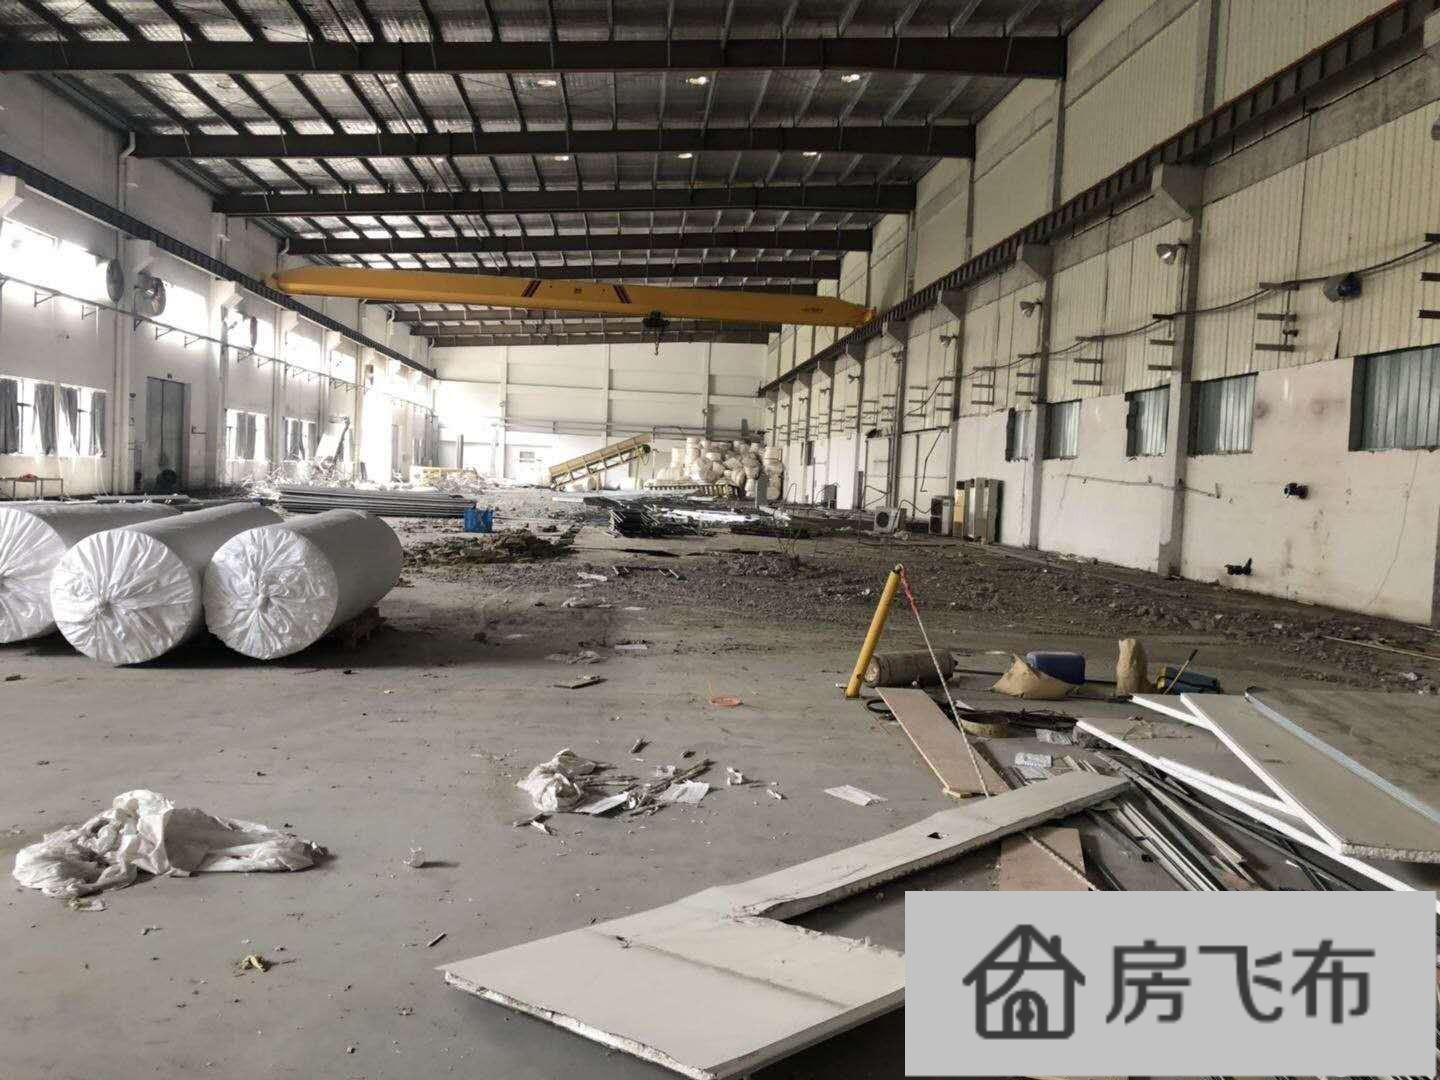 (出租) 临平钱江开发区附近1楼厂房仓库共7000平